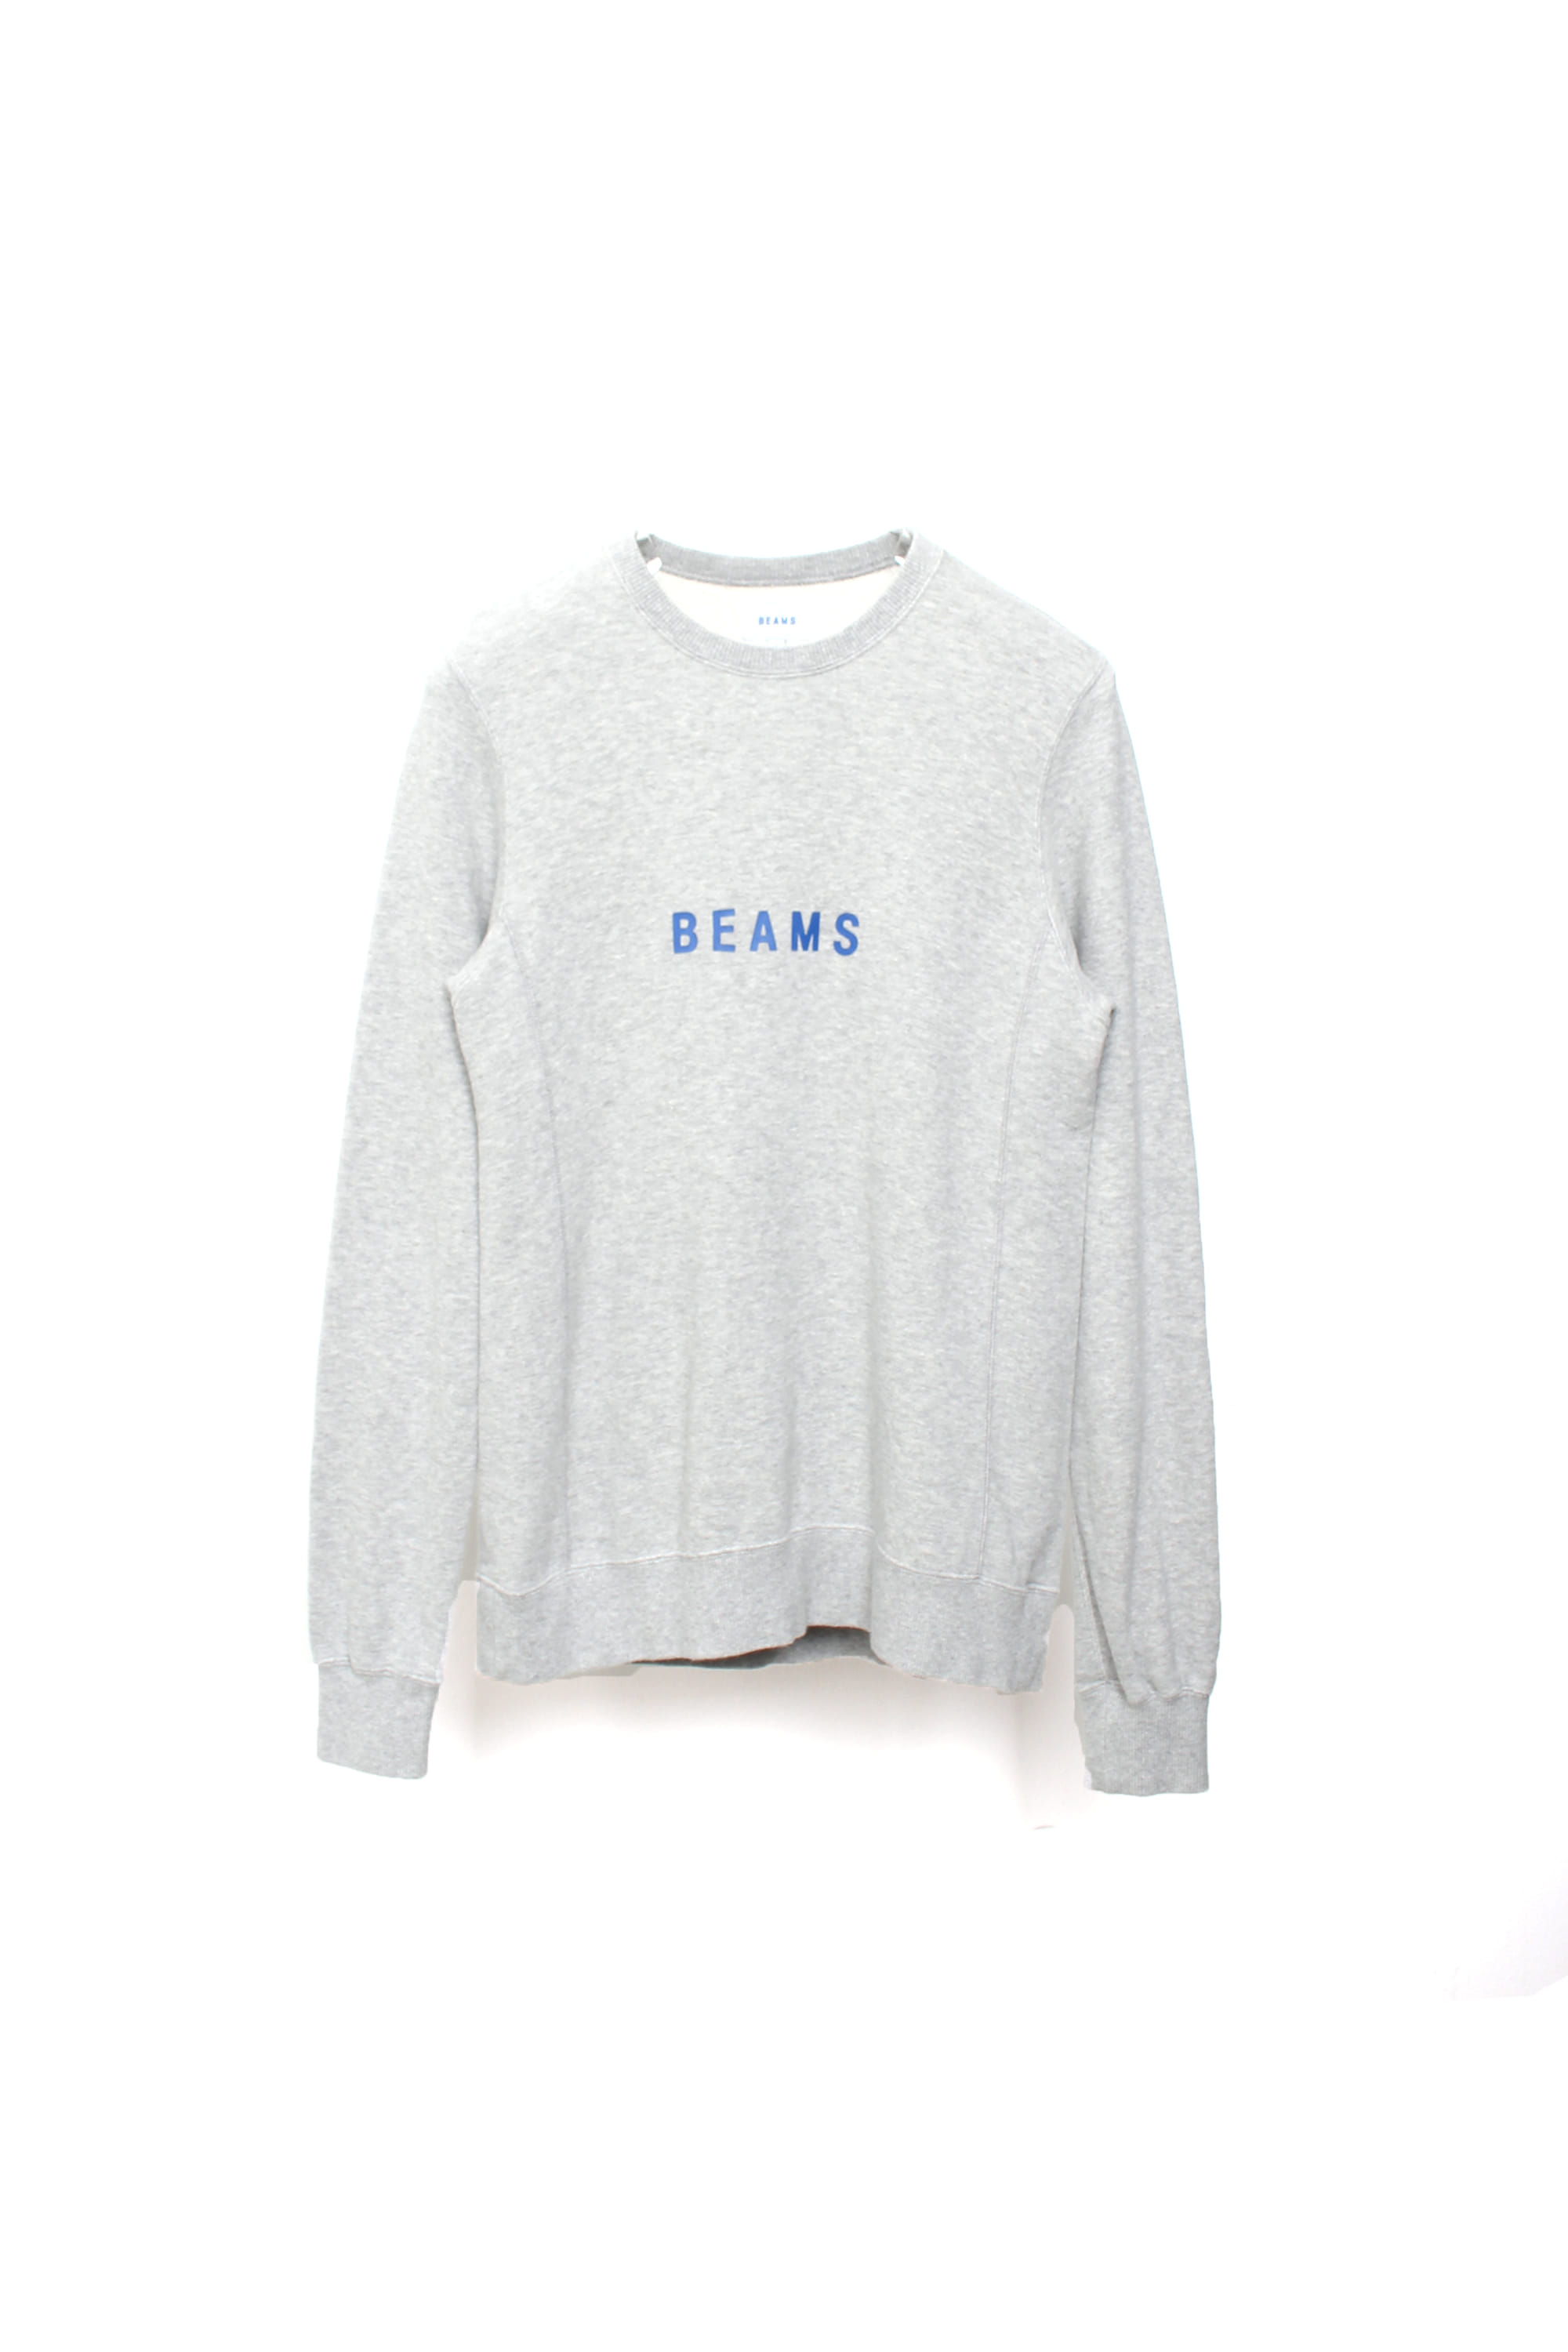 BEAMS logo sweatshirts